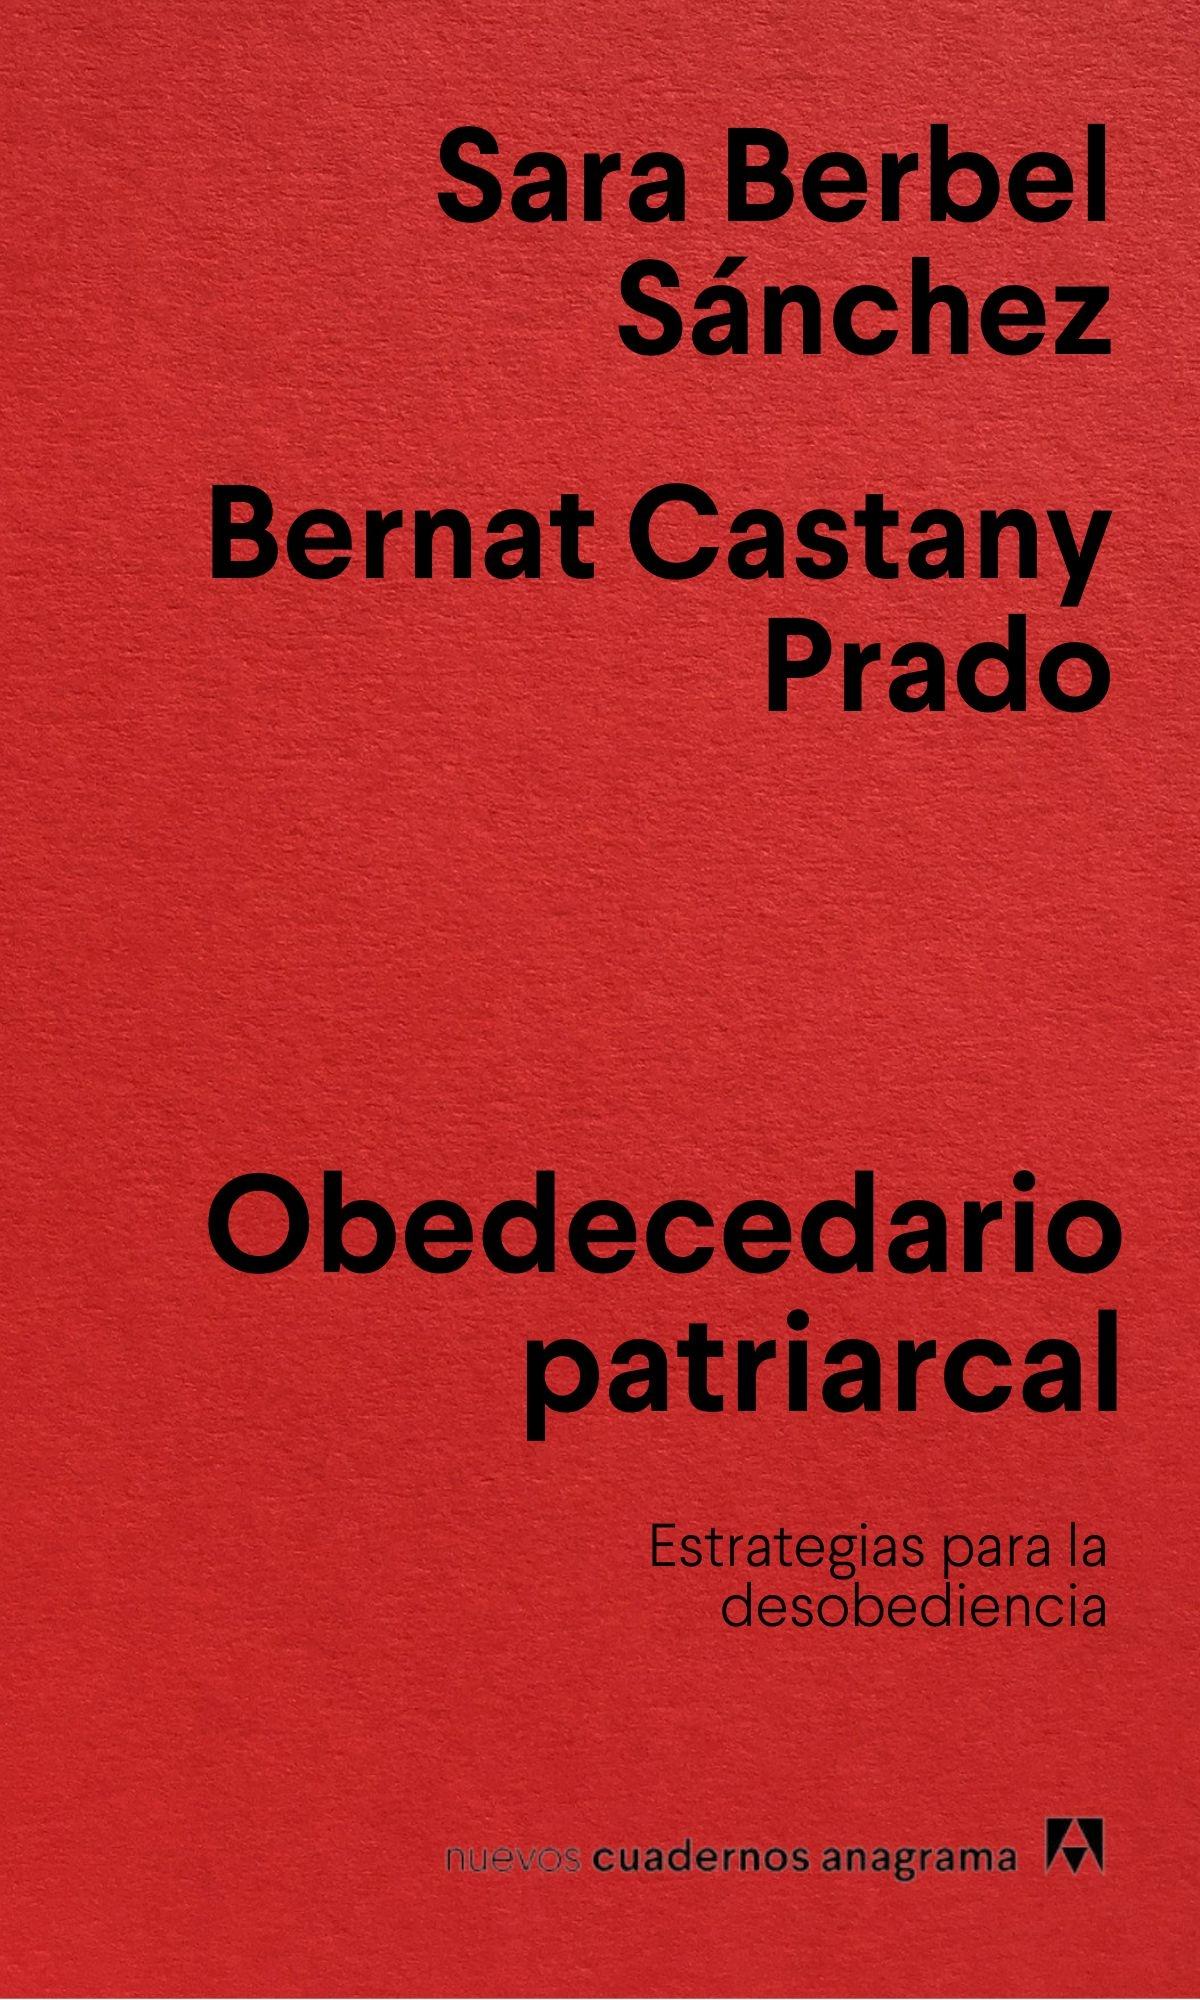 Obedecedario Patriarcal "Estrategias para la Desobediencia". 